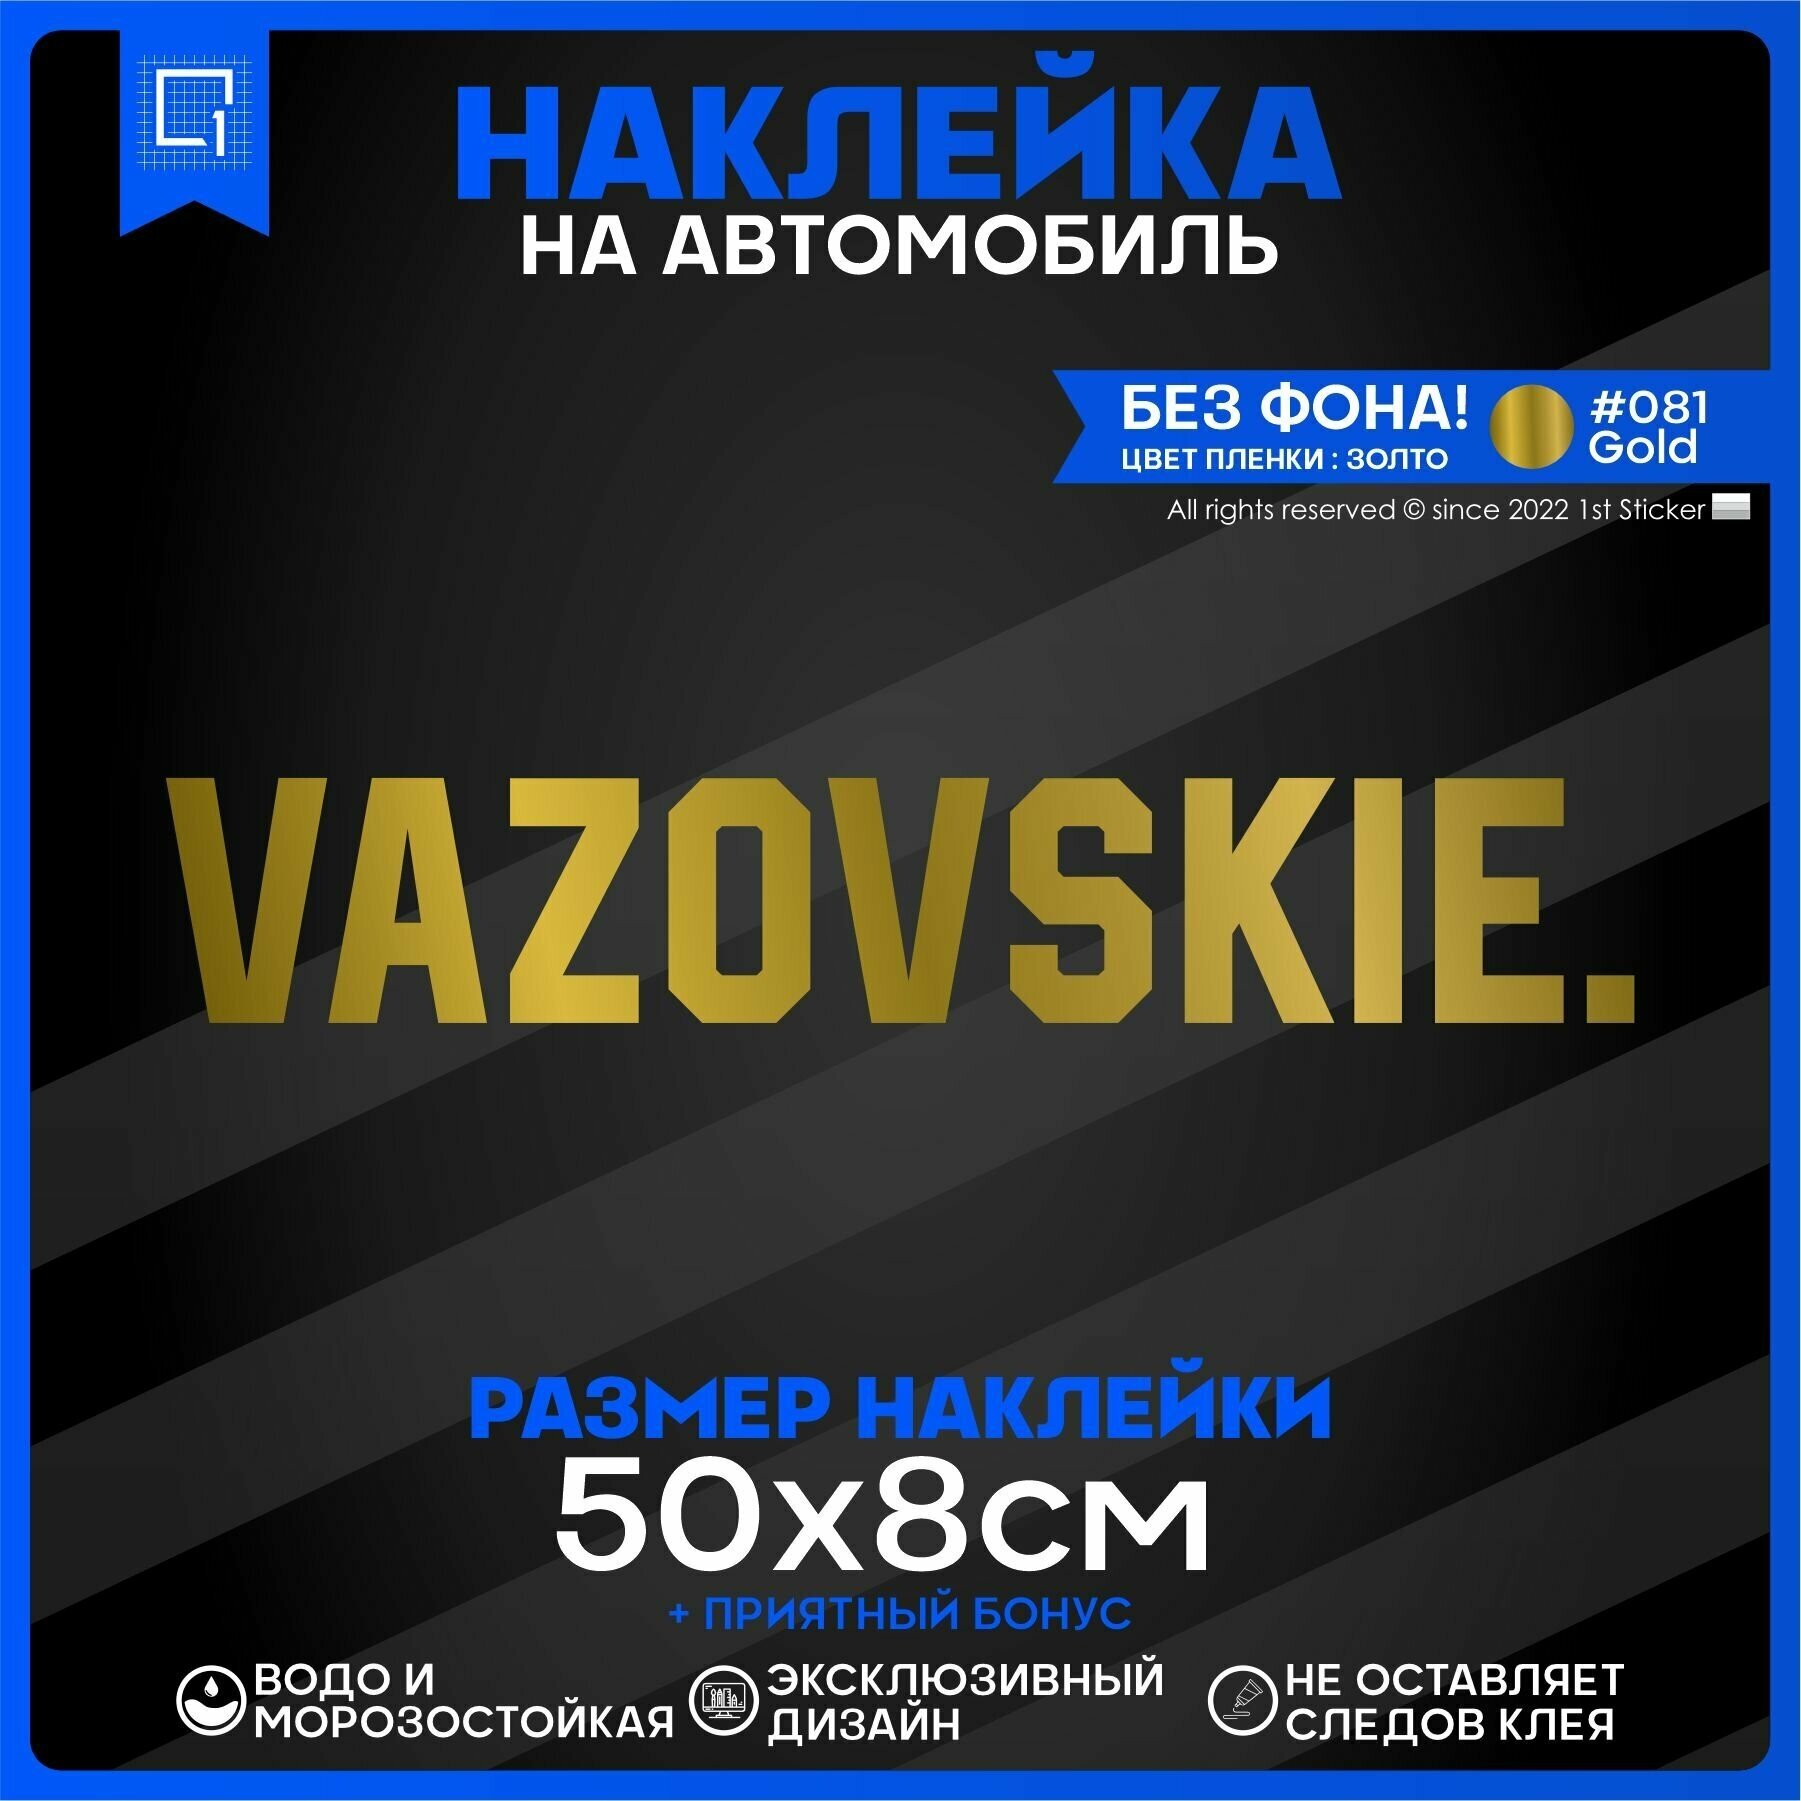 Наклейка на автомобиль VAZOVSKIE 50х8см